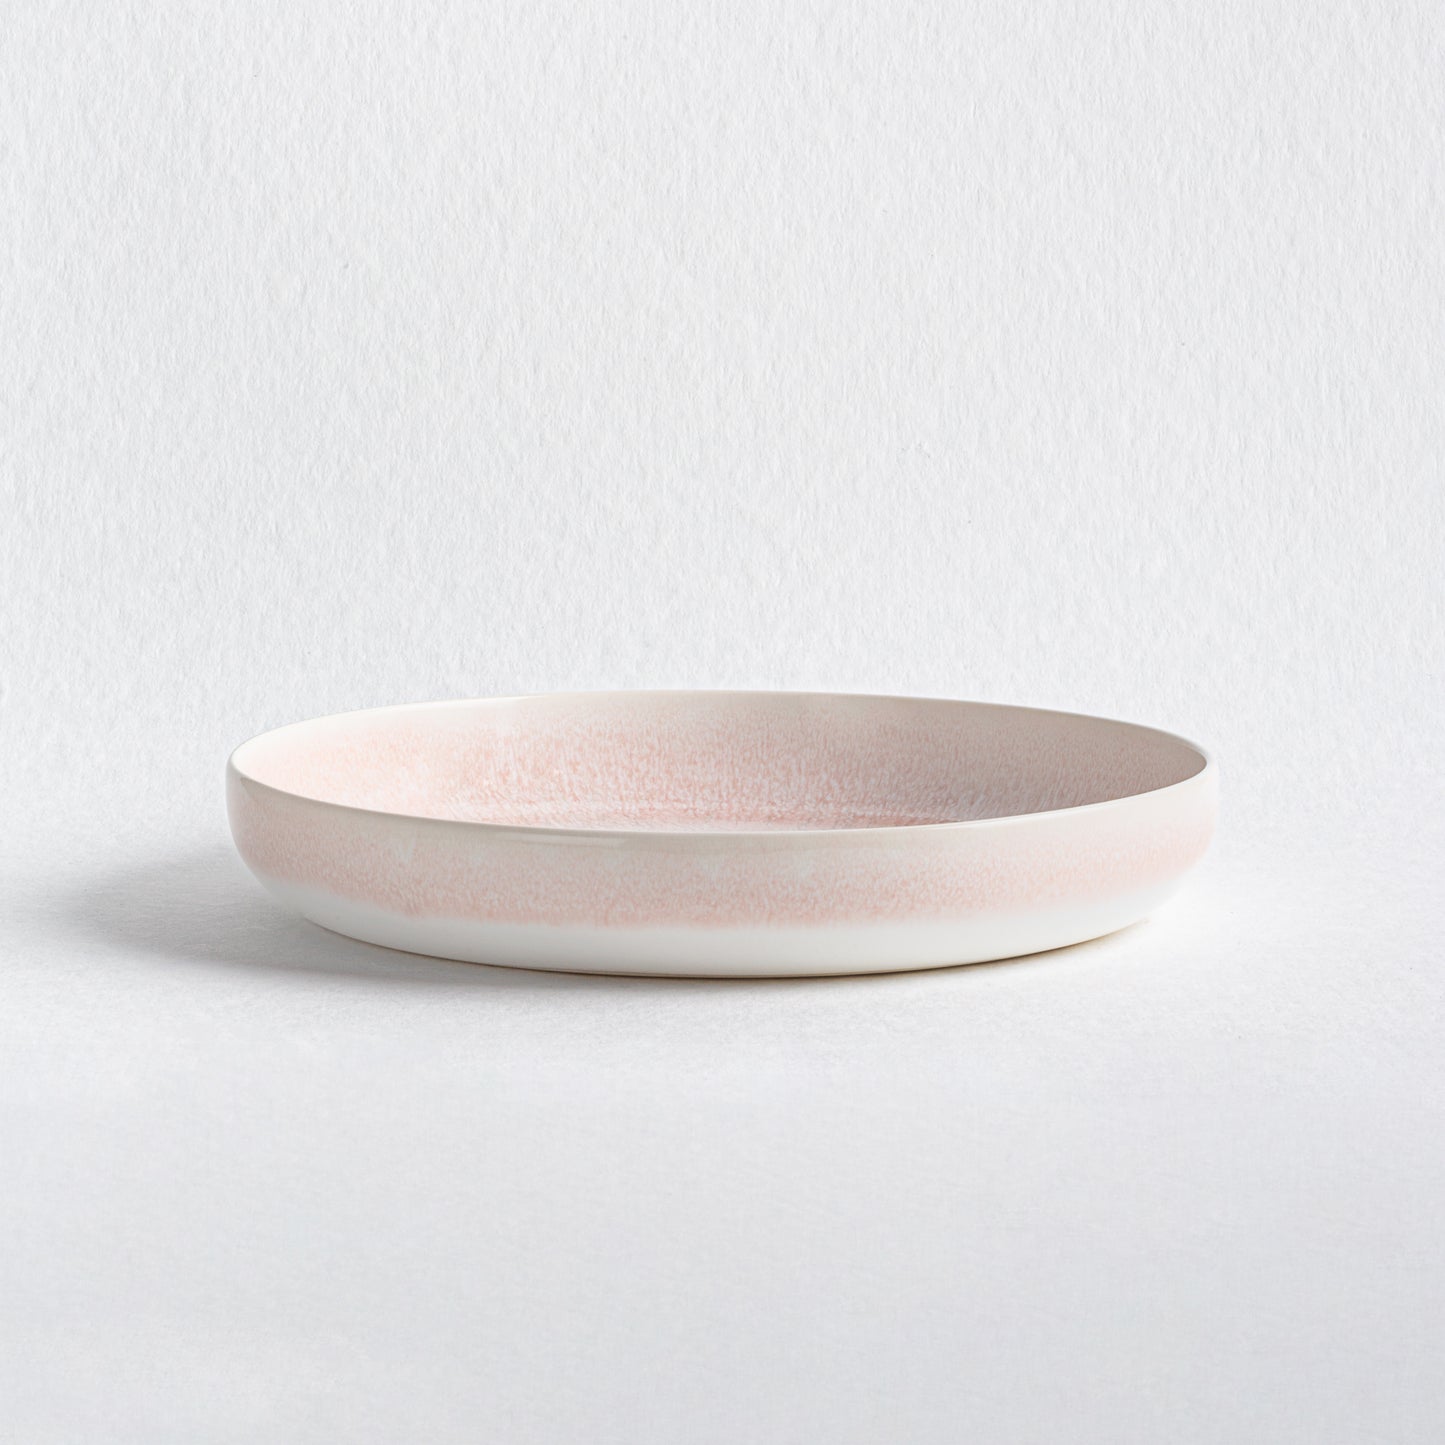 Light Pink Plate Set | Dishwasher Plate Set | Egg Back Home